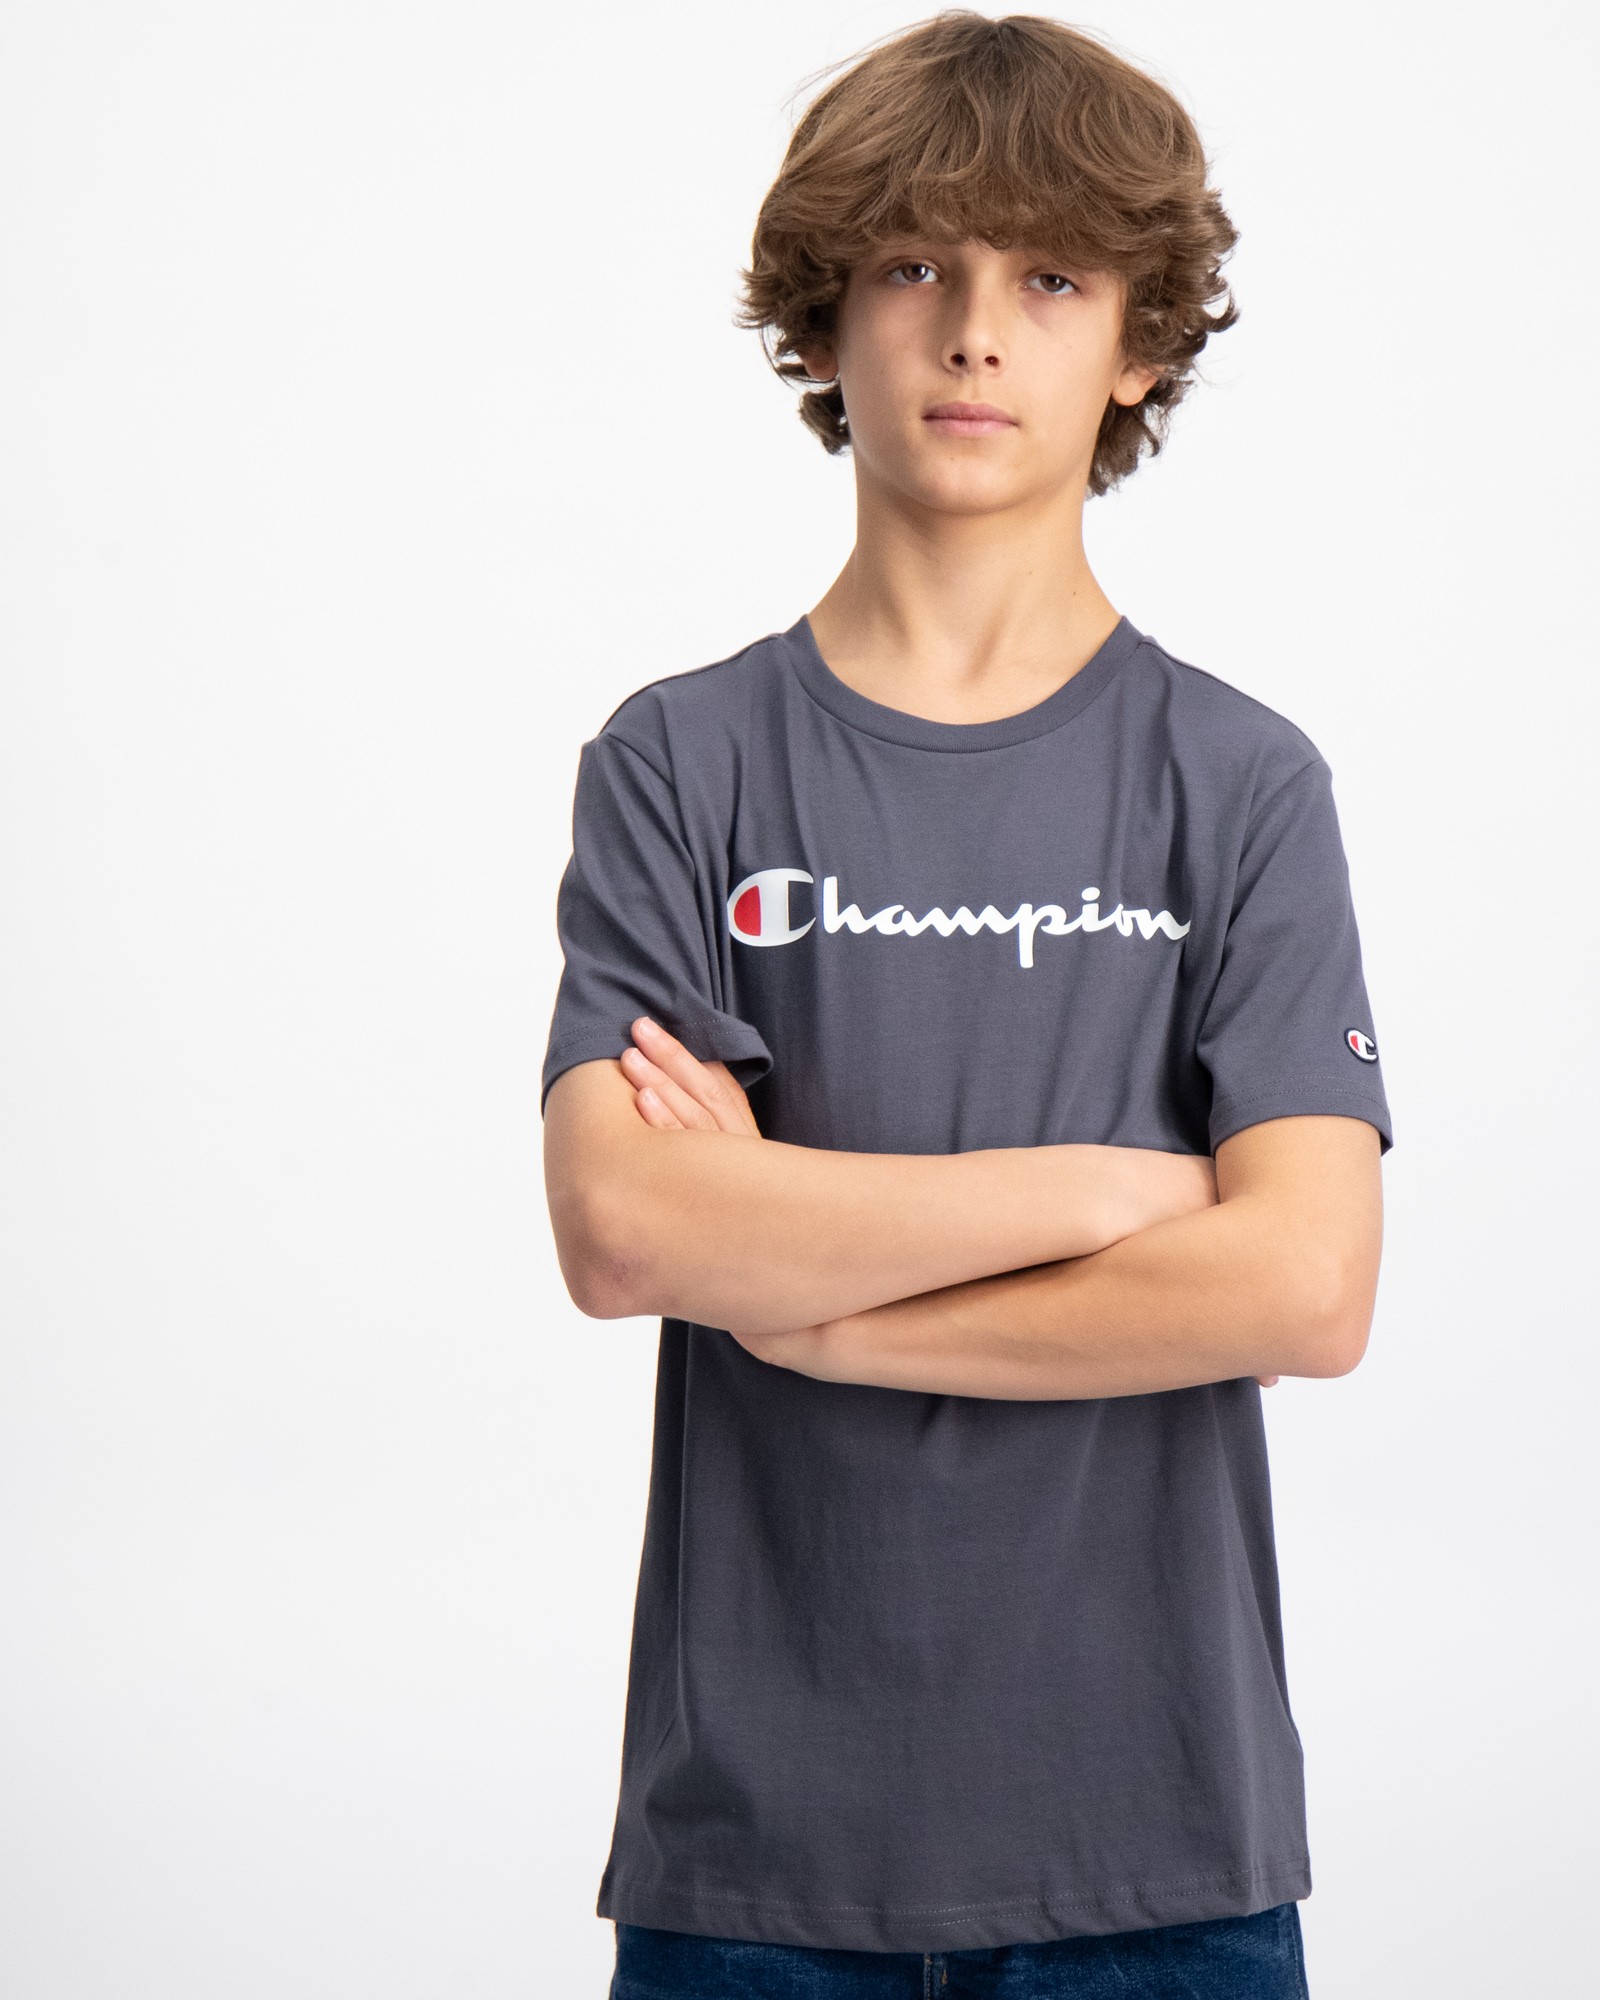 Grau Crewneck T-Shirt für Jungen | Kids Brand Store | Sport-T-Shirts